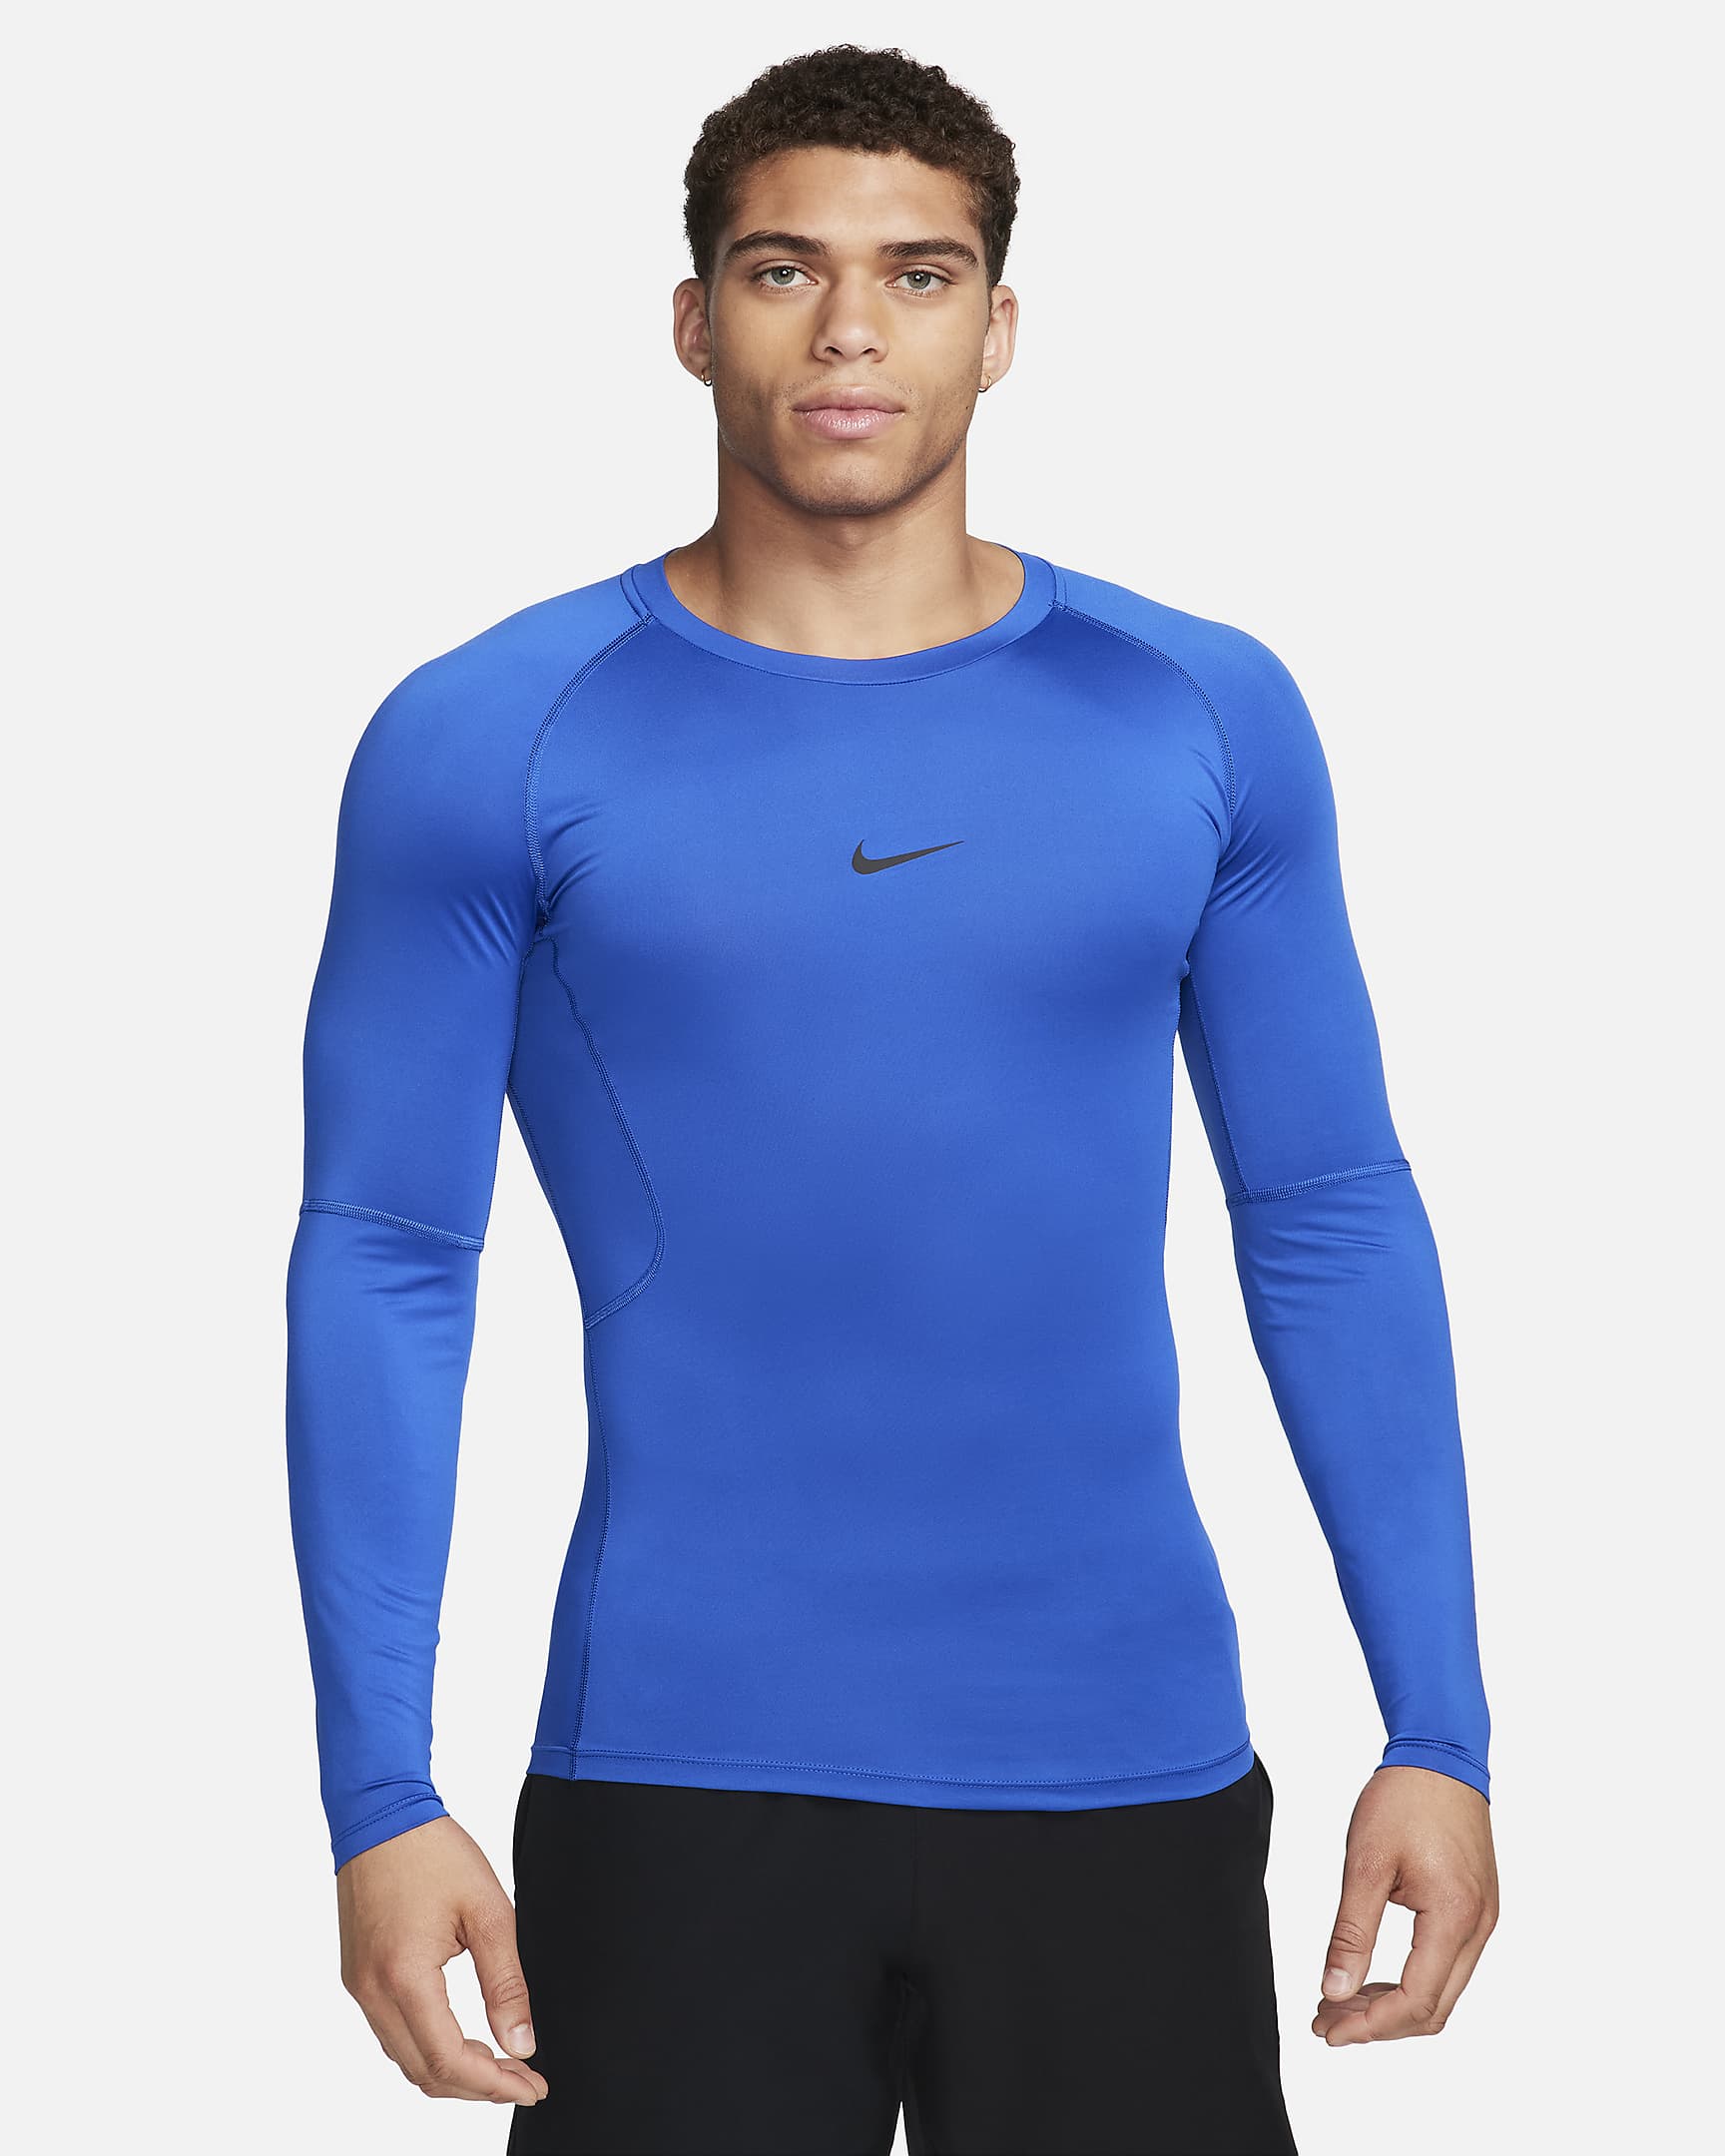 Nike Pro Men's Dri-FIT Tight Long-Sleeve Fitness Top - Game Royal/Black